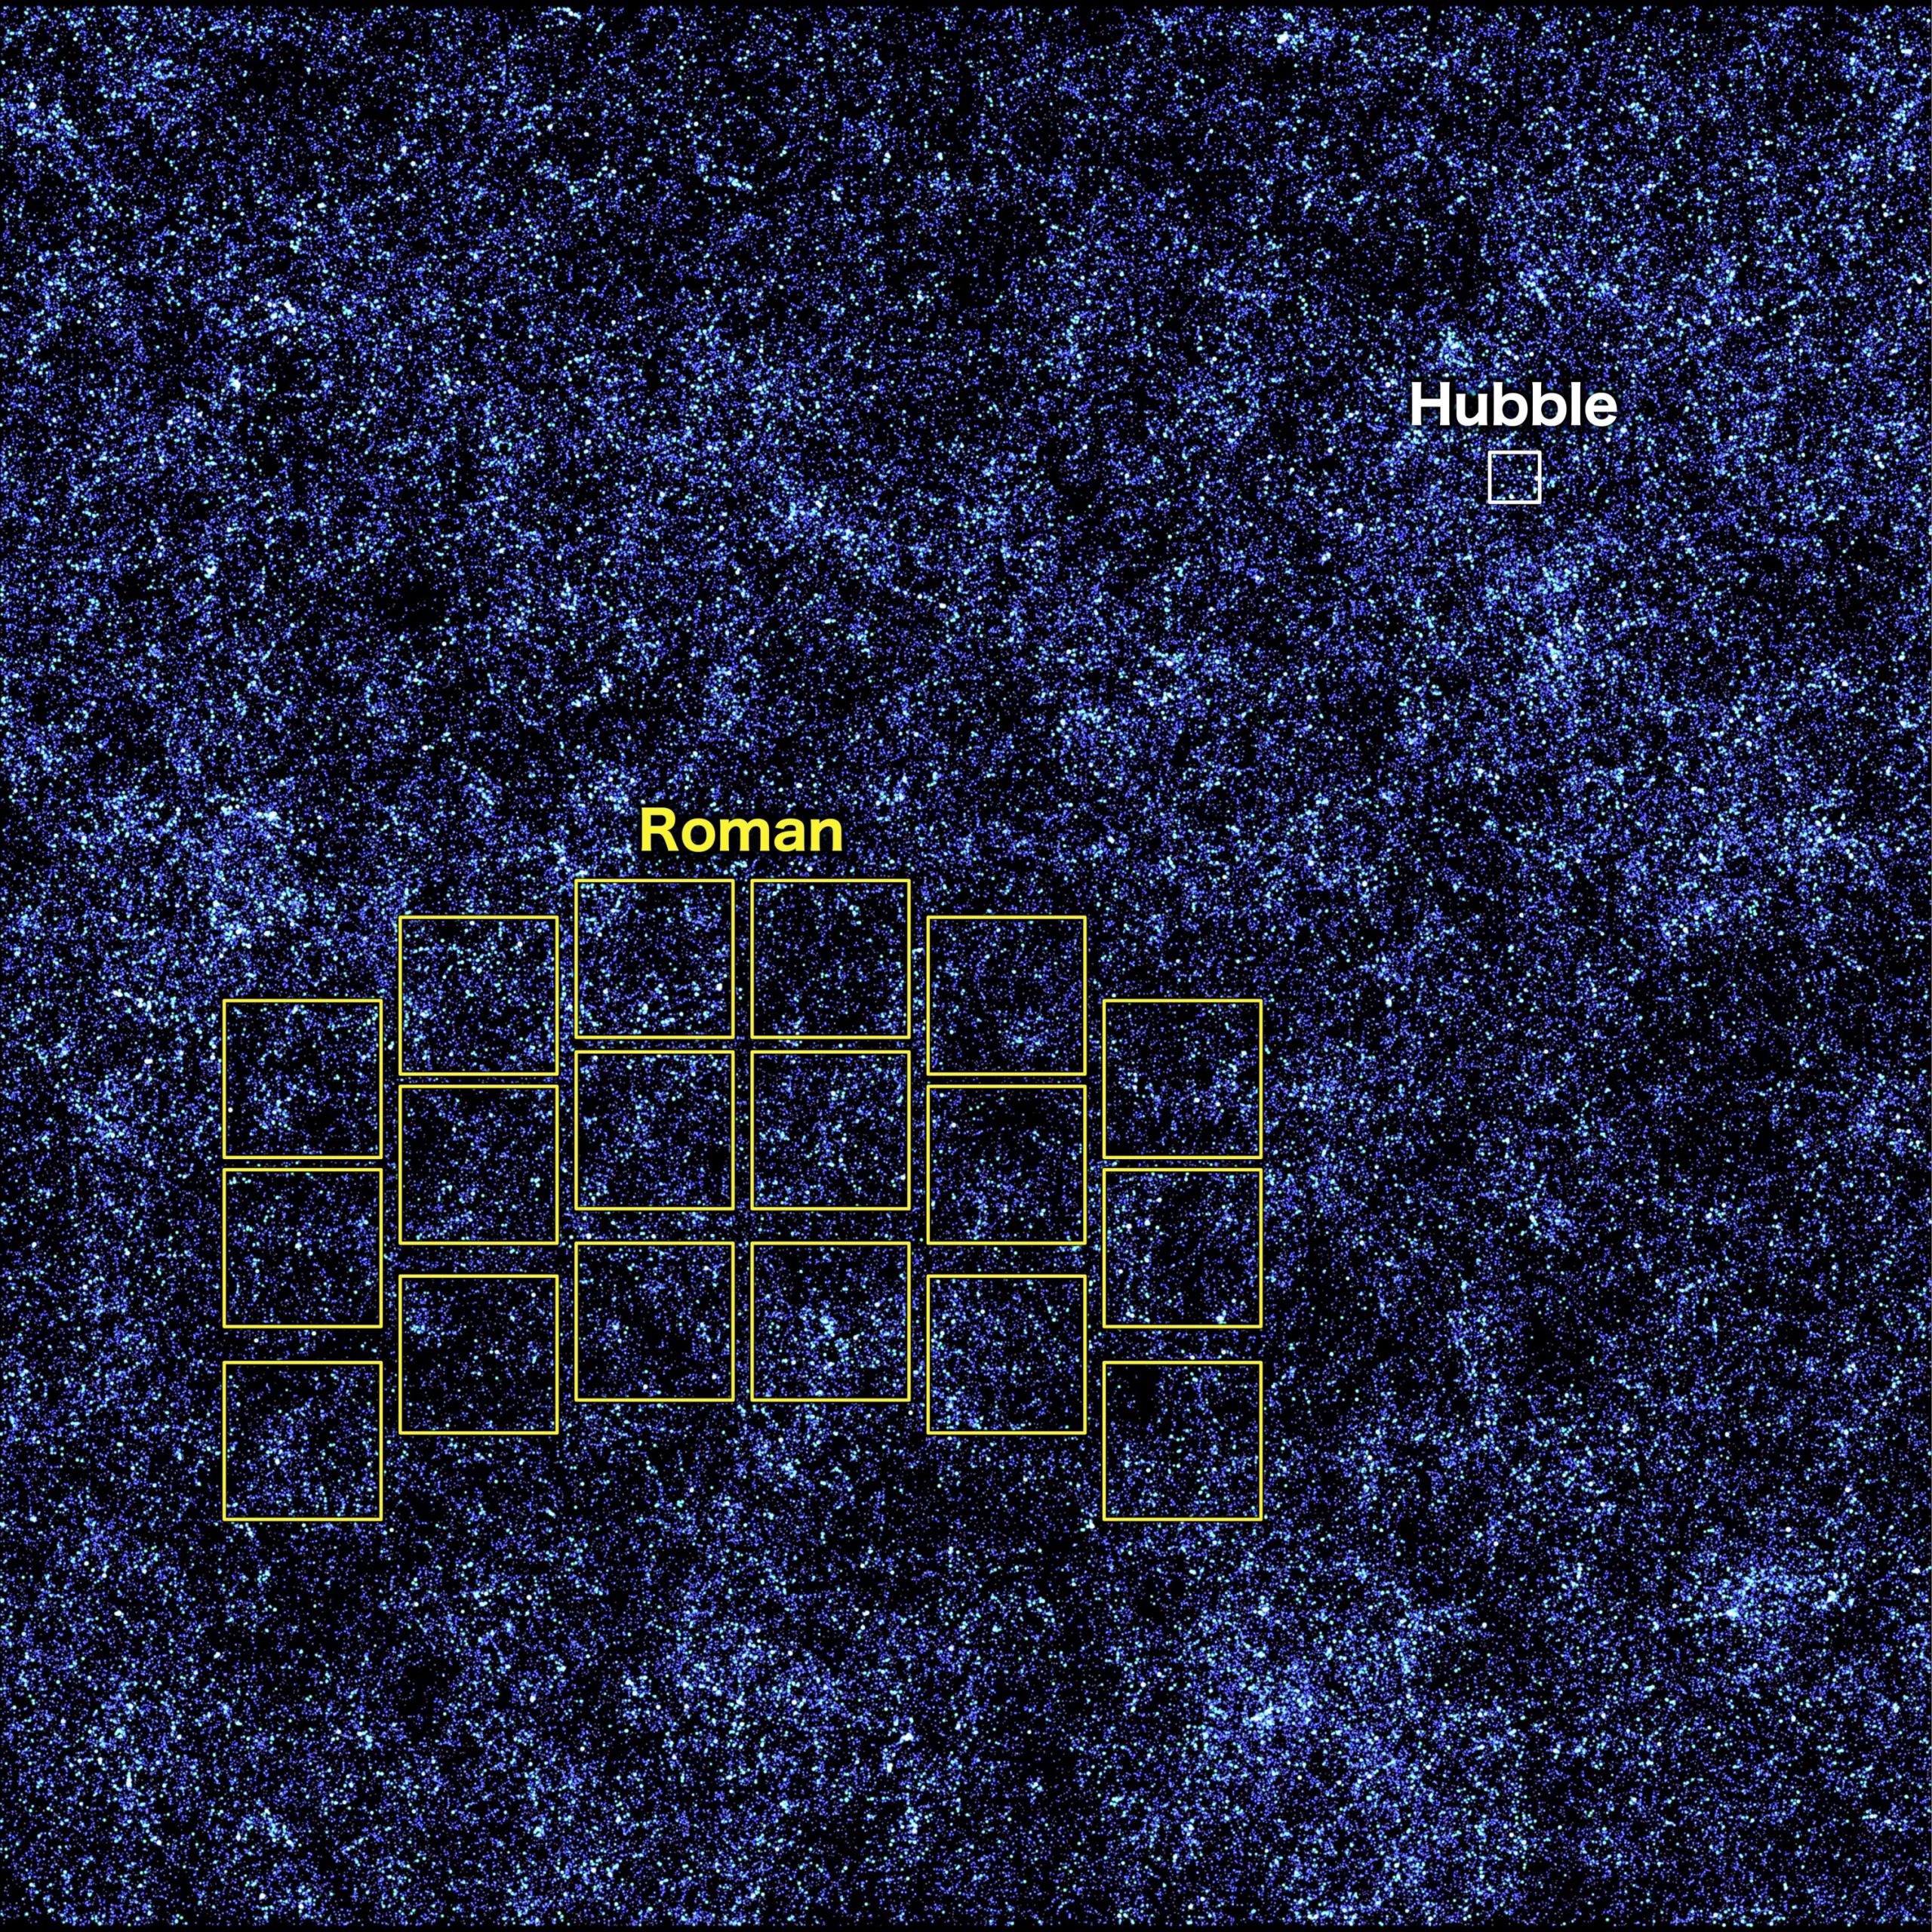 Esta imagen, que contiene millones de galaxias simuladas esparcidas por el espacio y el tiempo, muestra las áreas que Hubble (en blanco) y Roman (en amarillo) pueden captar en una sola imagen. Hubble tardaría unos 85 años en cartografiar toda la región a la misma profundidad que se muestra en la imagen, pero Roman podría hacerlo en apenas 63 días. La visión más amplia de Roman y sus rápidas velocidades de exploración revelarán el universo en evolución de maneras que nunca antes habían sido posibles.